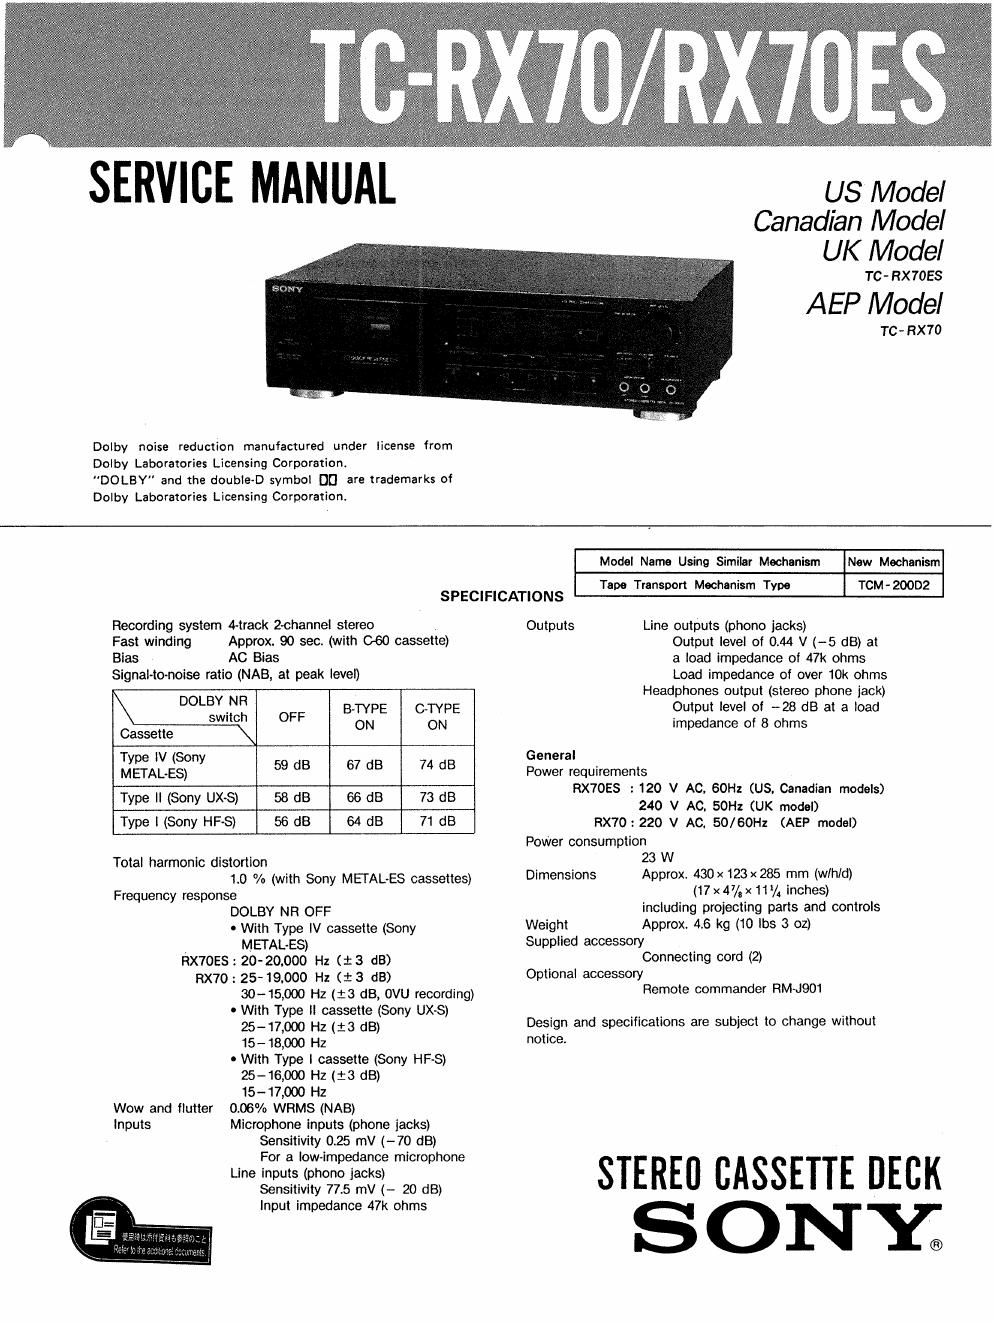 sony tc rx 70 service manual